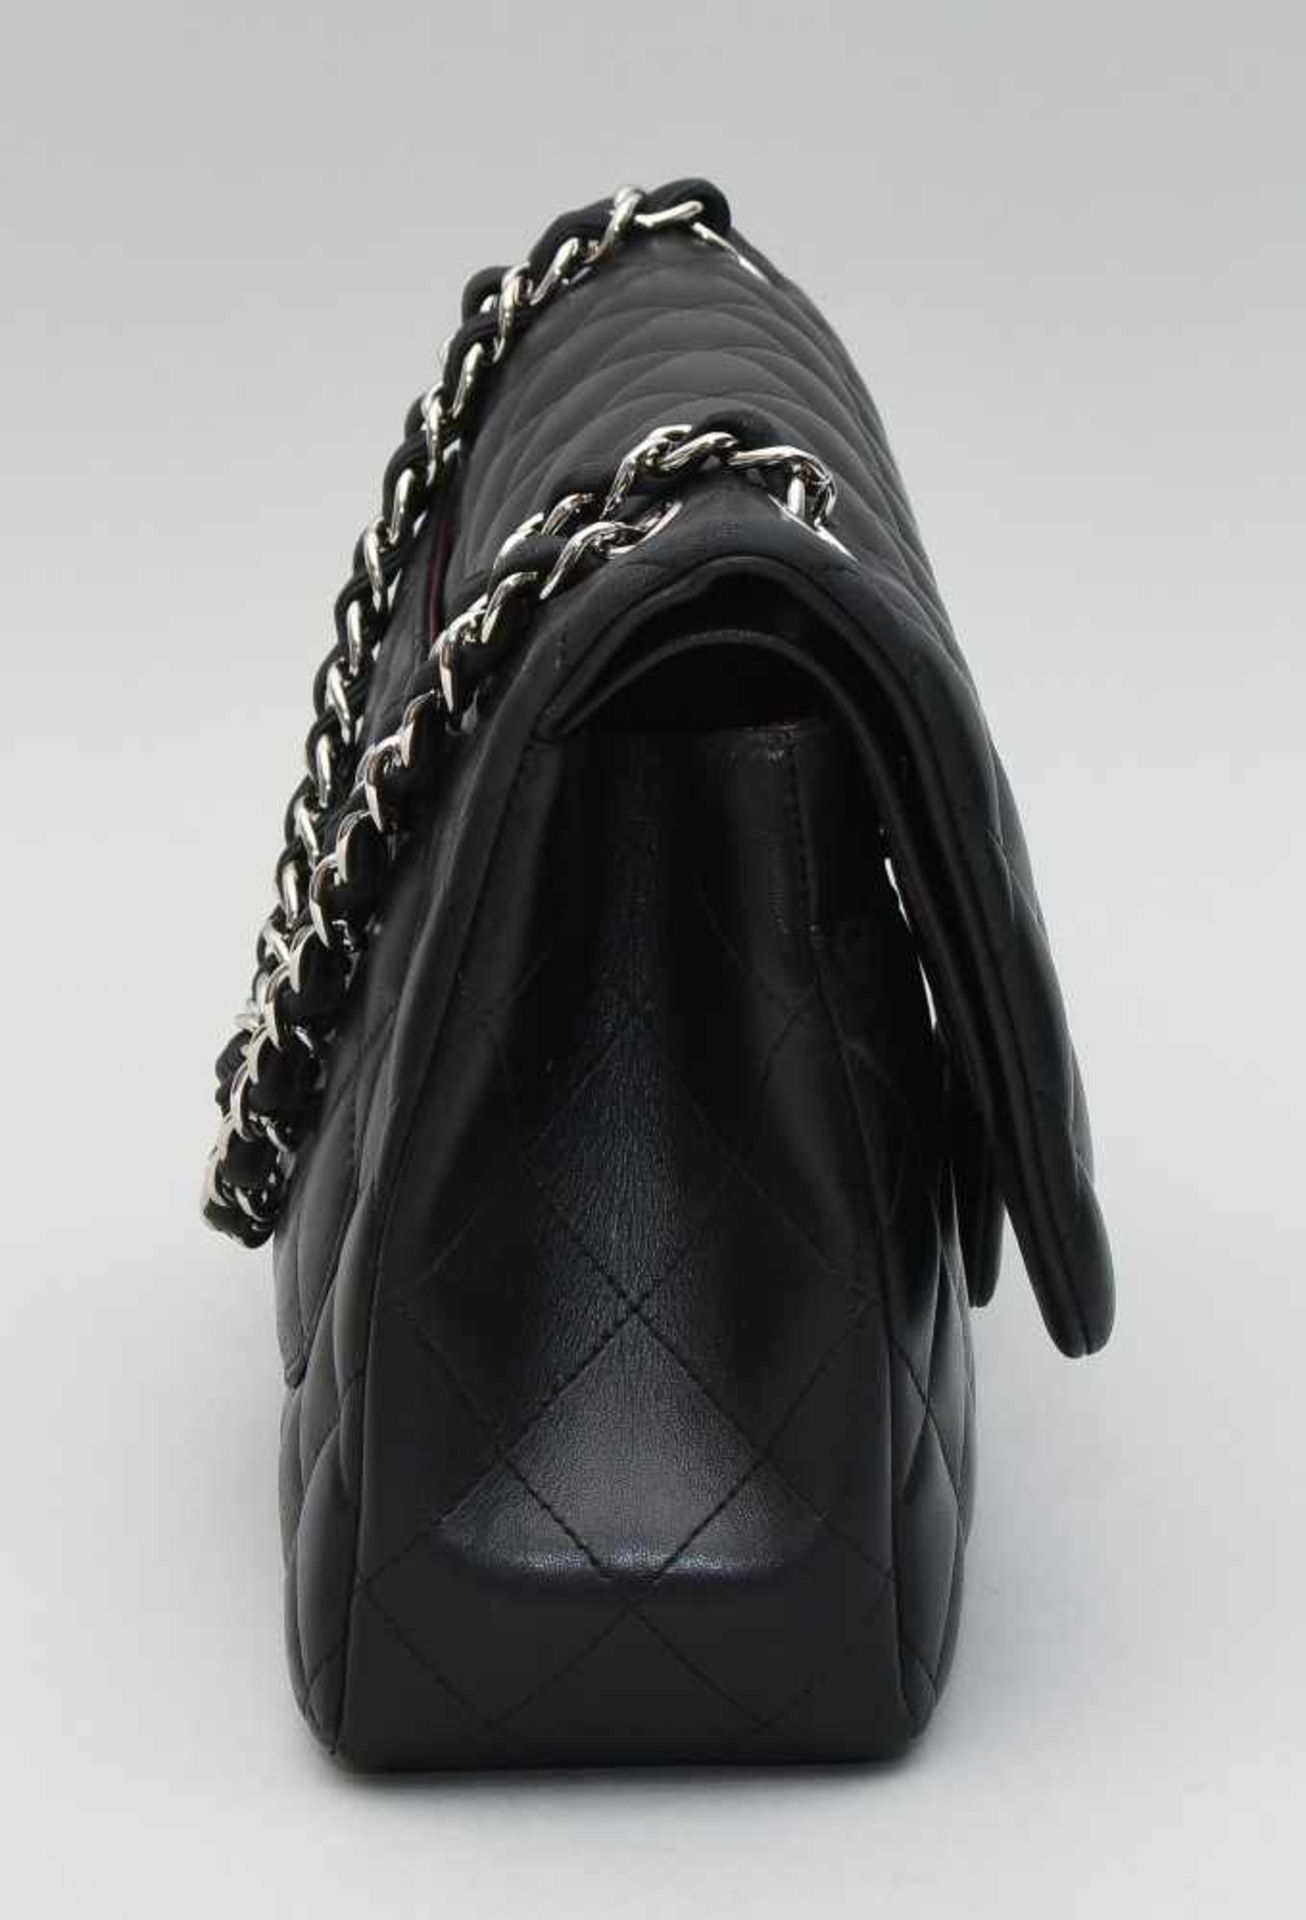 Chanel, Handtasche "Timeless" Jumbo Aus schwarzem Leder mit gestepptem Rautenmuster. - Bild 10 aus 13